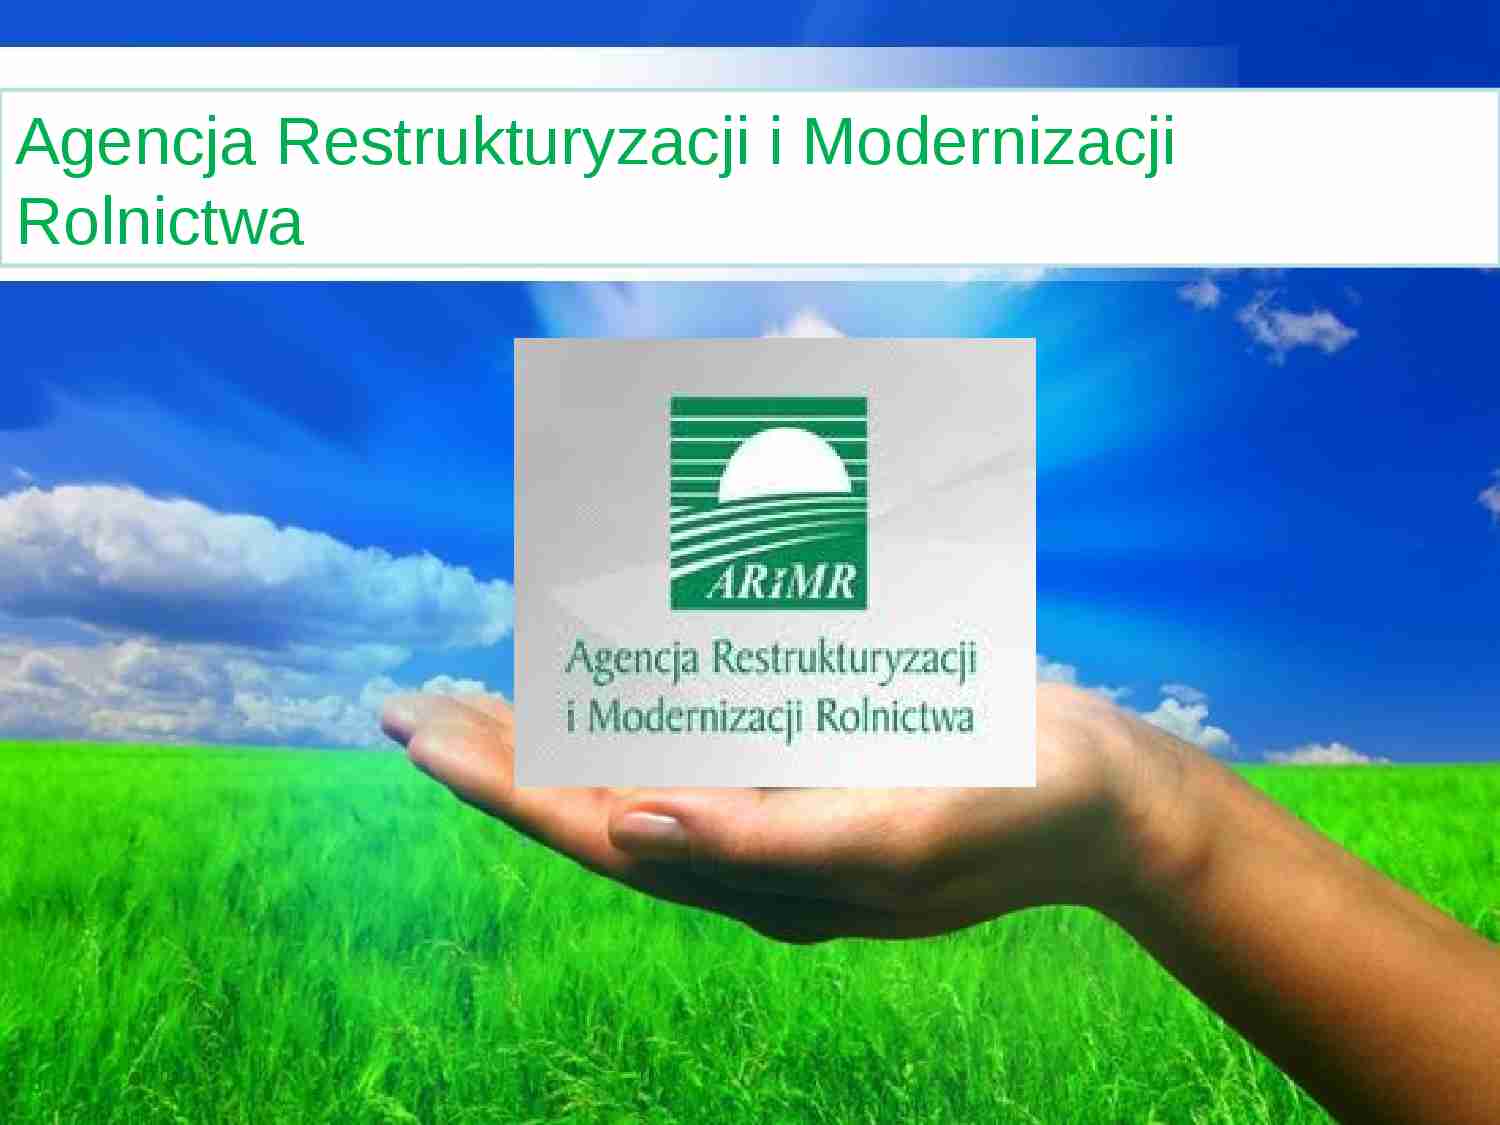 Agencja Restrukturyzacji i Modernizacji Rolnictwa 2 - prezentacja na